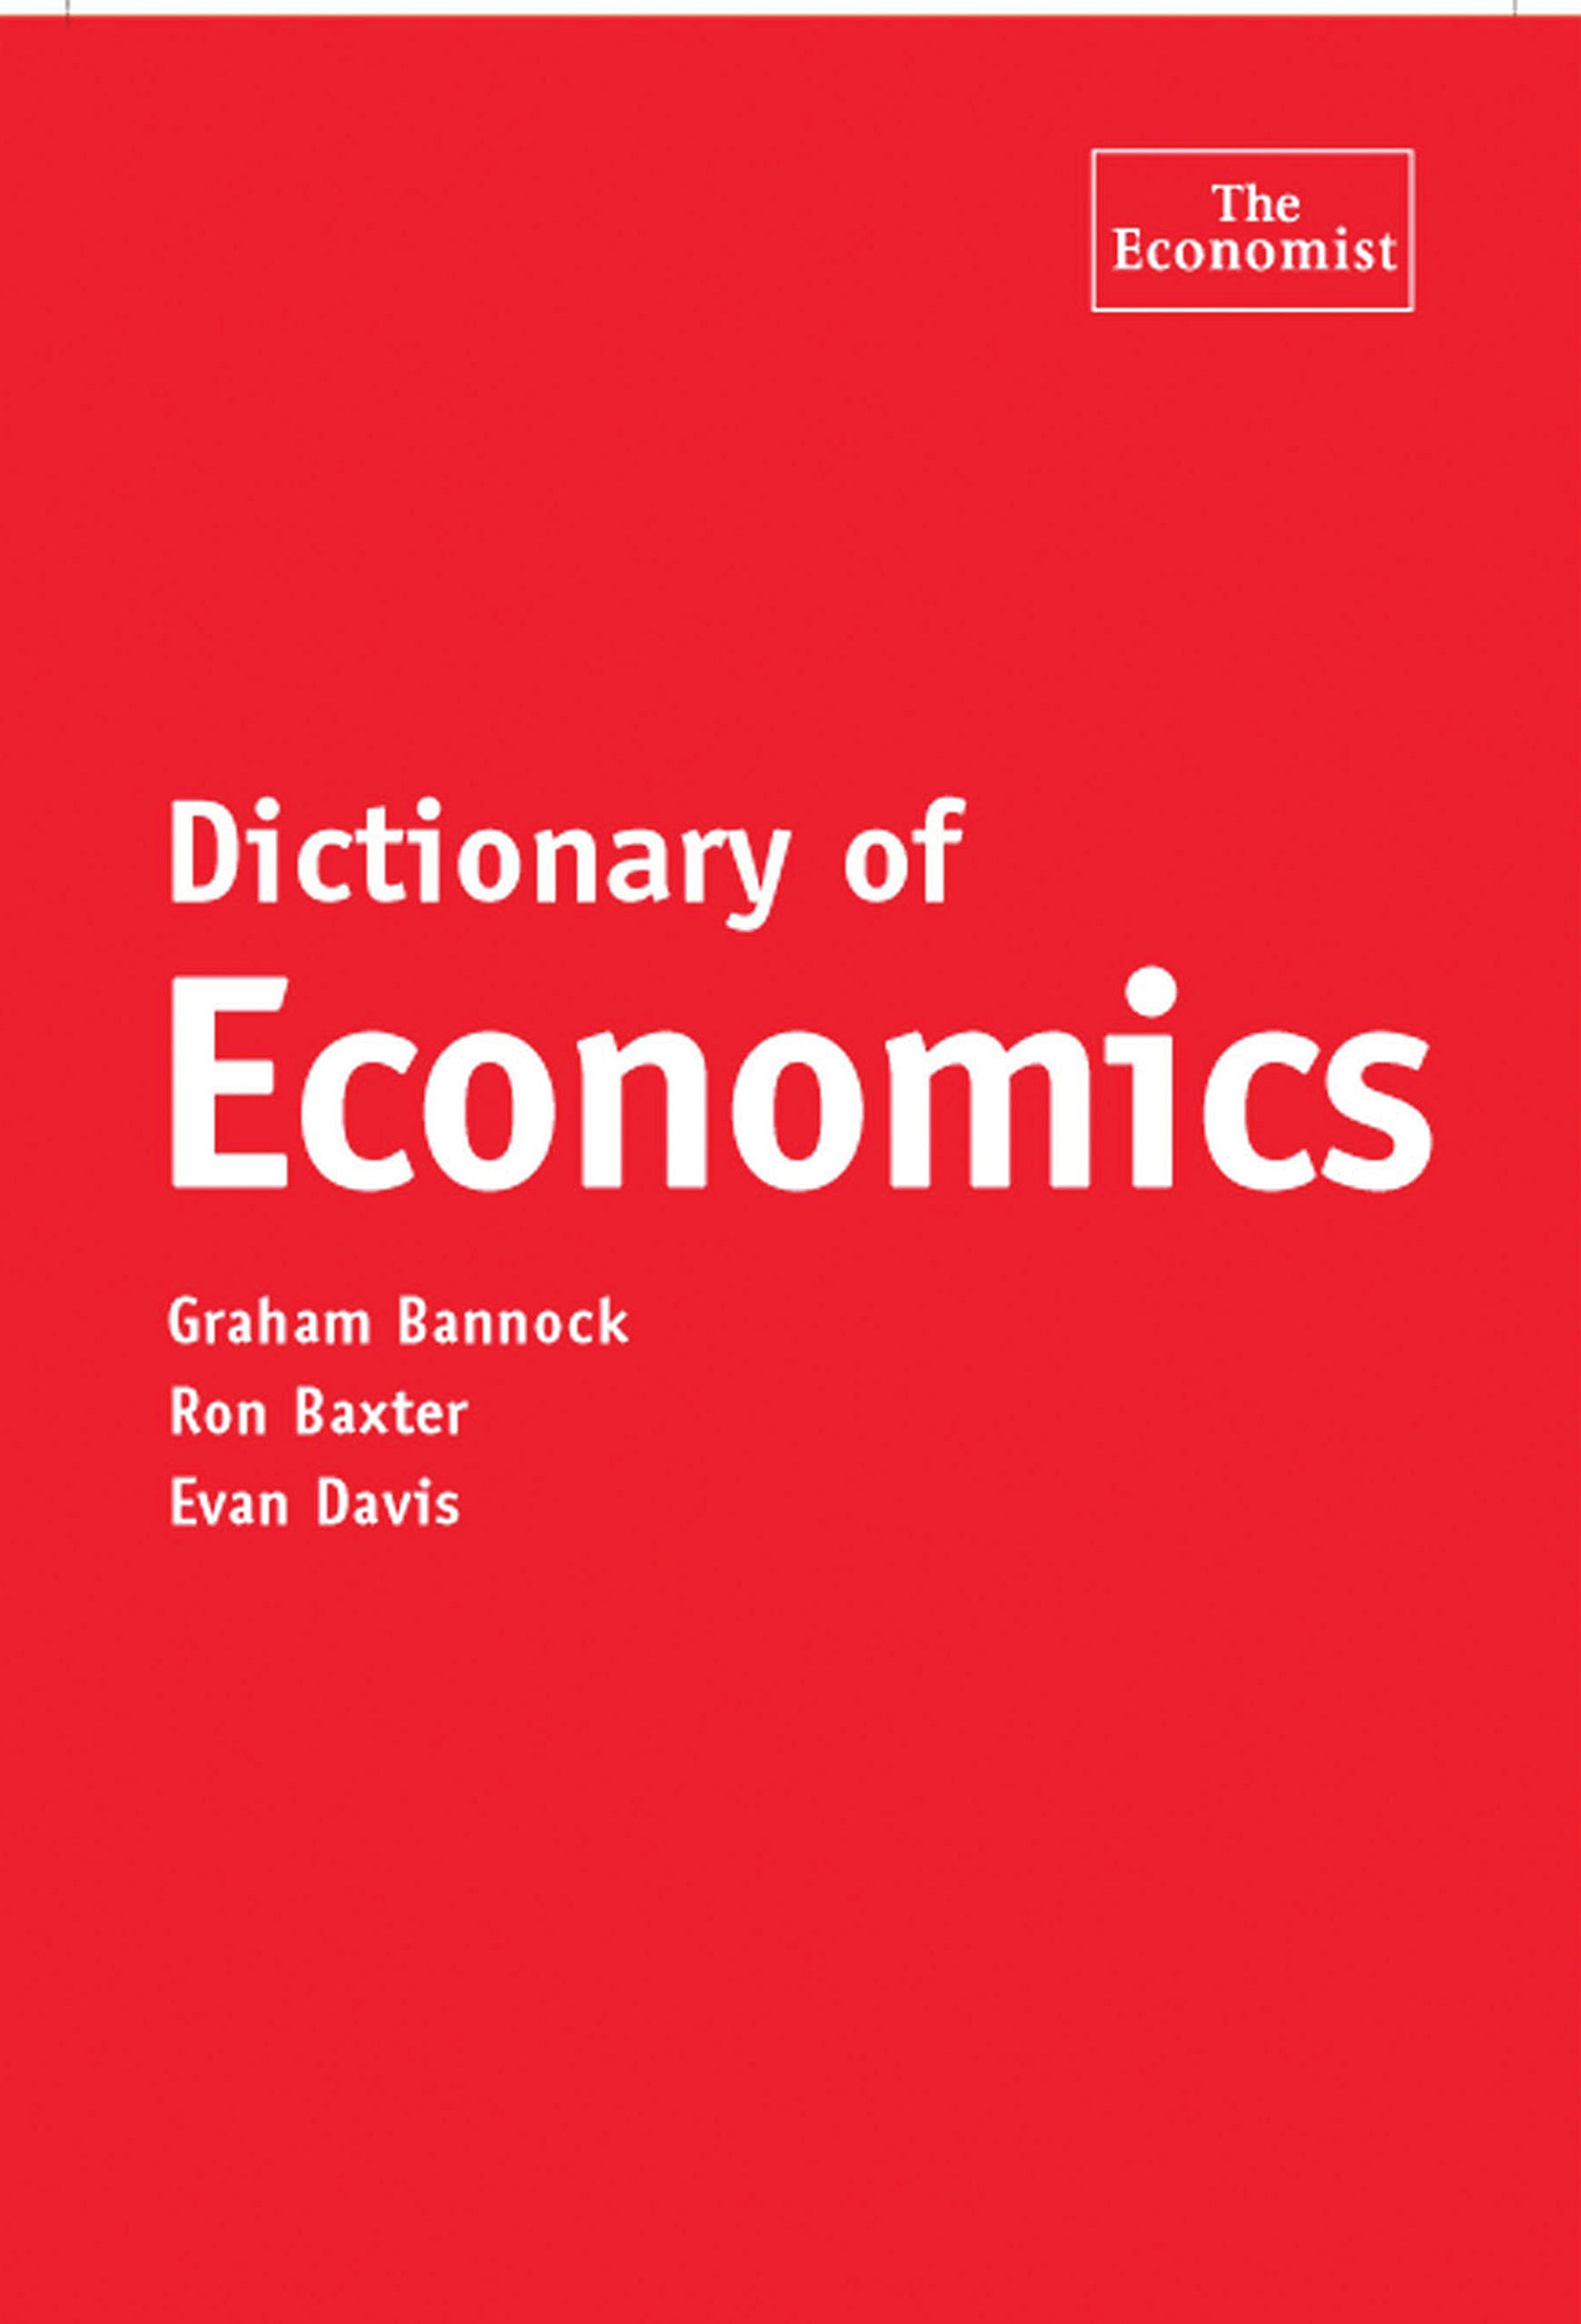 The Economist: Dictionary of Economics [HB]